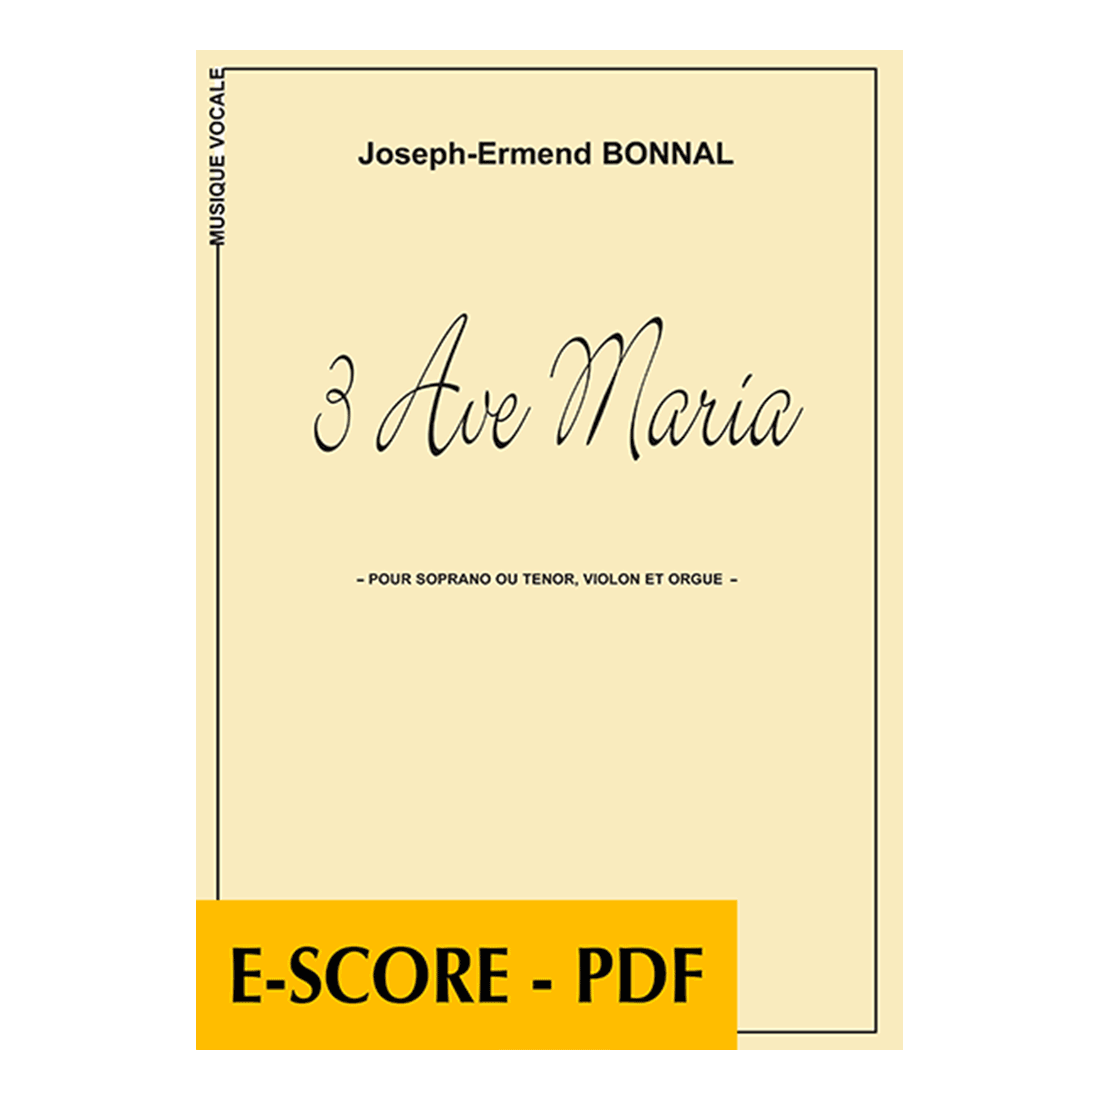 3 Ave Maria for soprano or tenor, violin and organ - E-score PDF